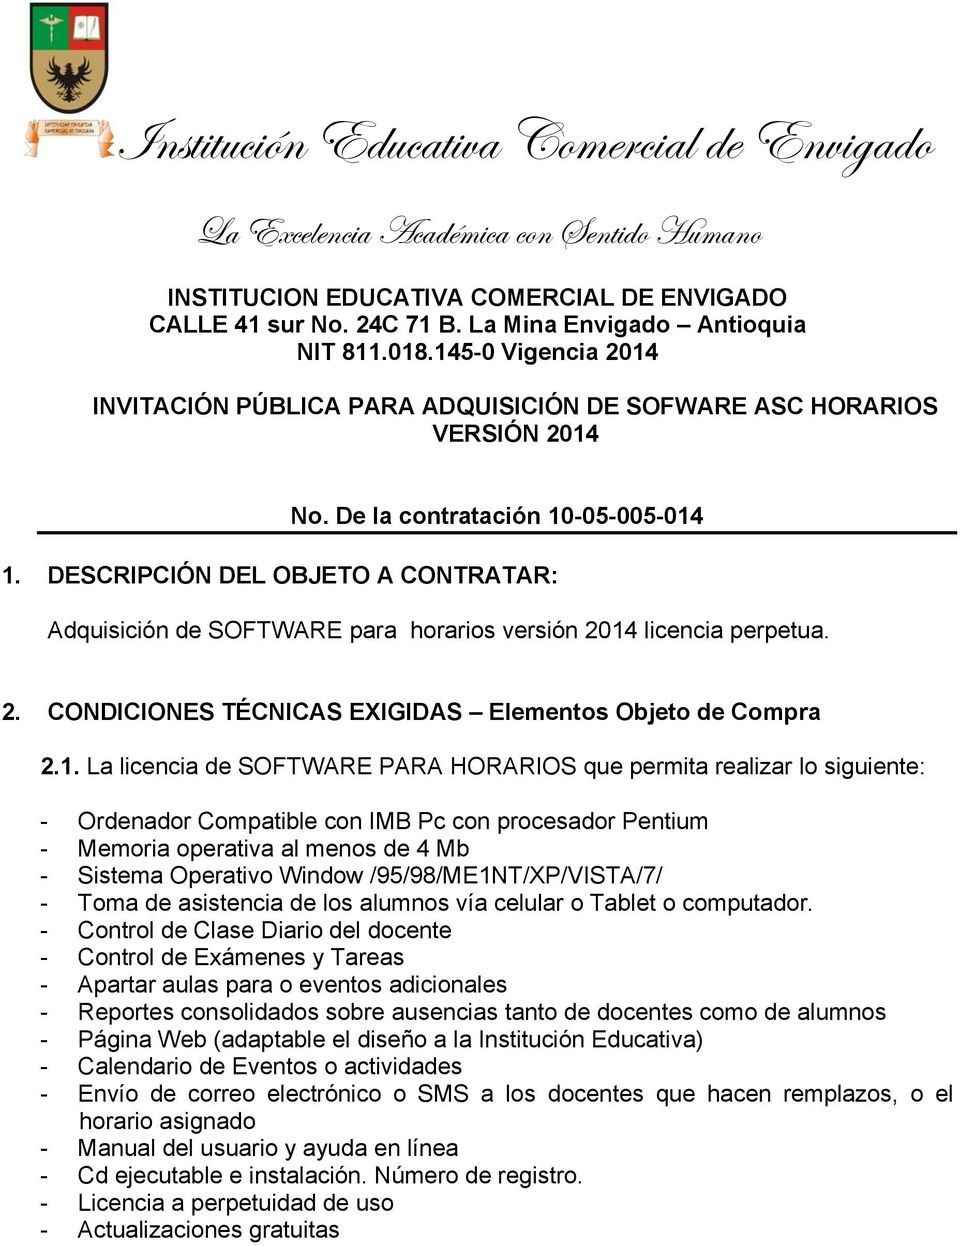 DESCRIPCIÓN DEL OBJETO A CONTRATAR: Adquisición de SOFTWARE para horarios versión 2014